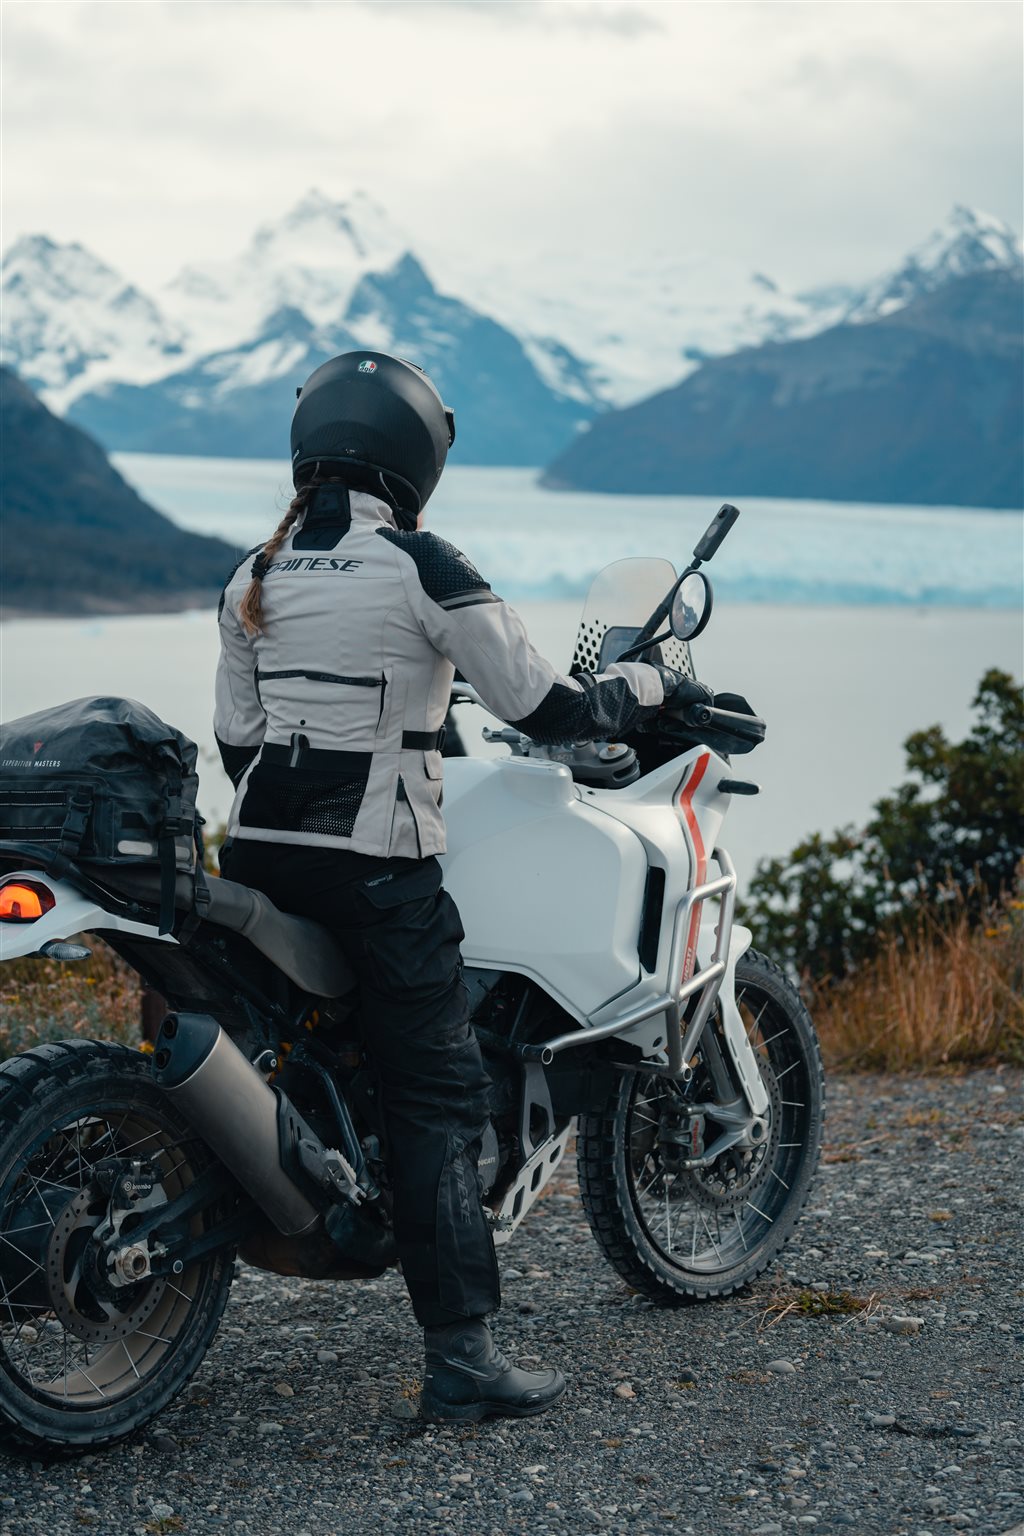 Abenteuer am Ende der Welt - Motorradreise in Patagonien